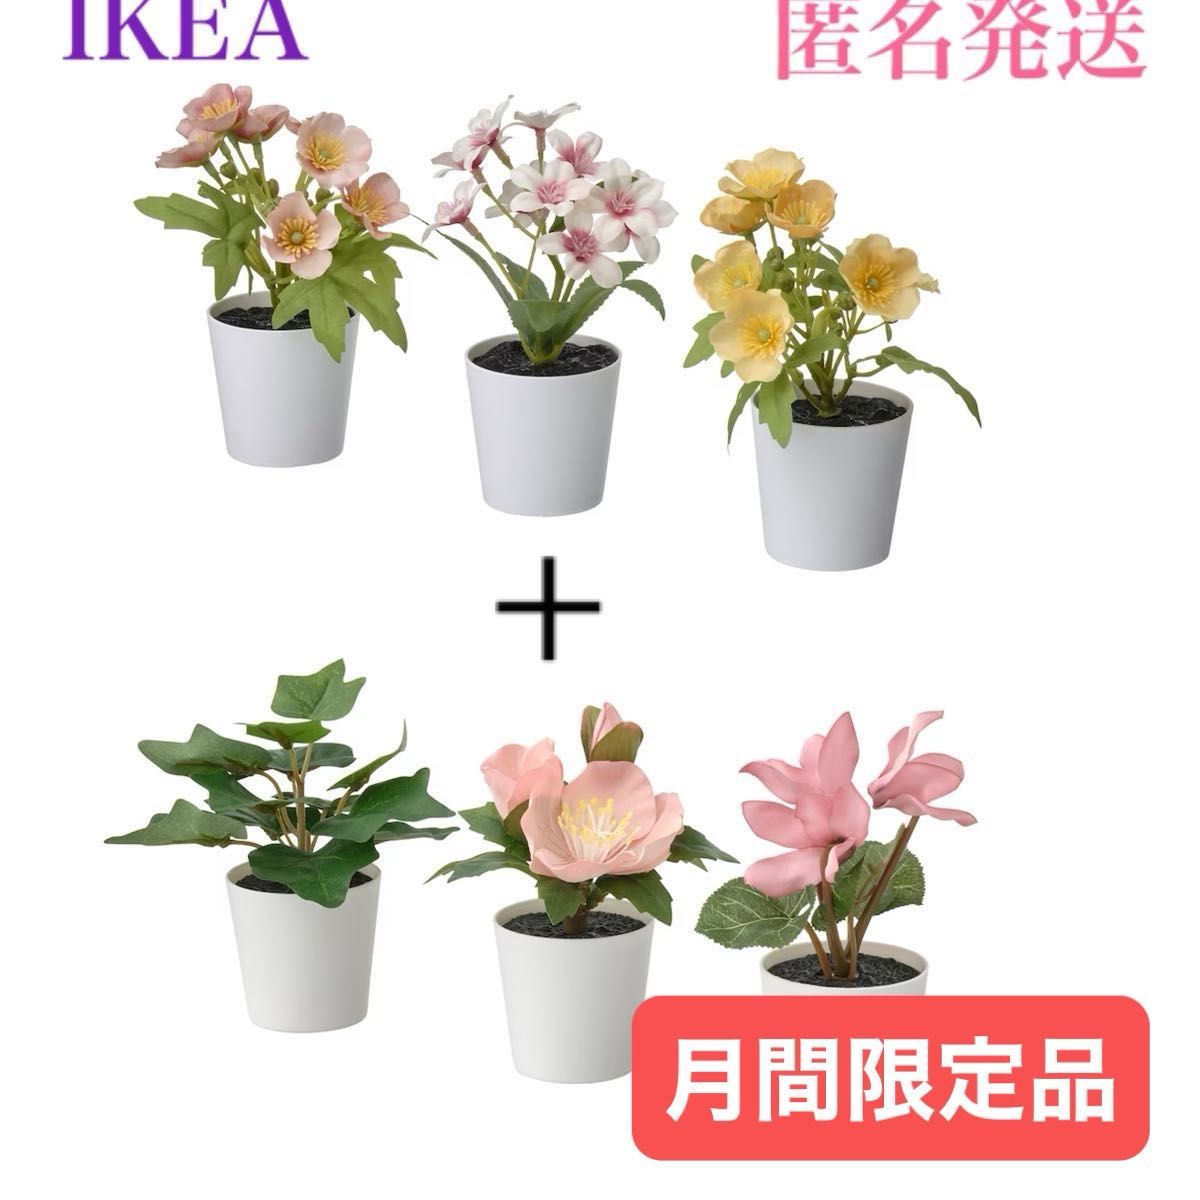 【新品】イケア IKEA フェイカ フェイクグリーン 鉢カバー付き6 cm 3ピース × 2種 フラワーミックス グリーン/ピンク